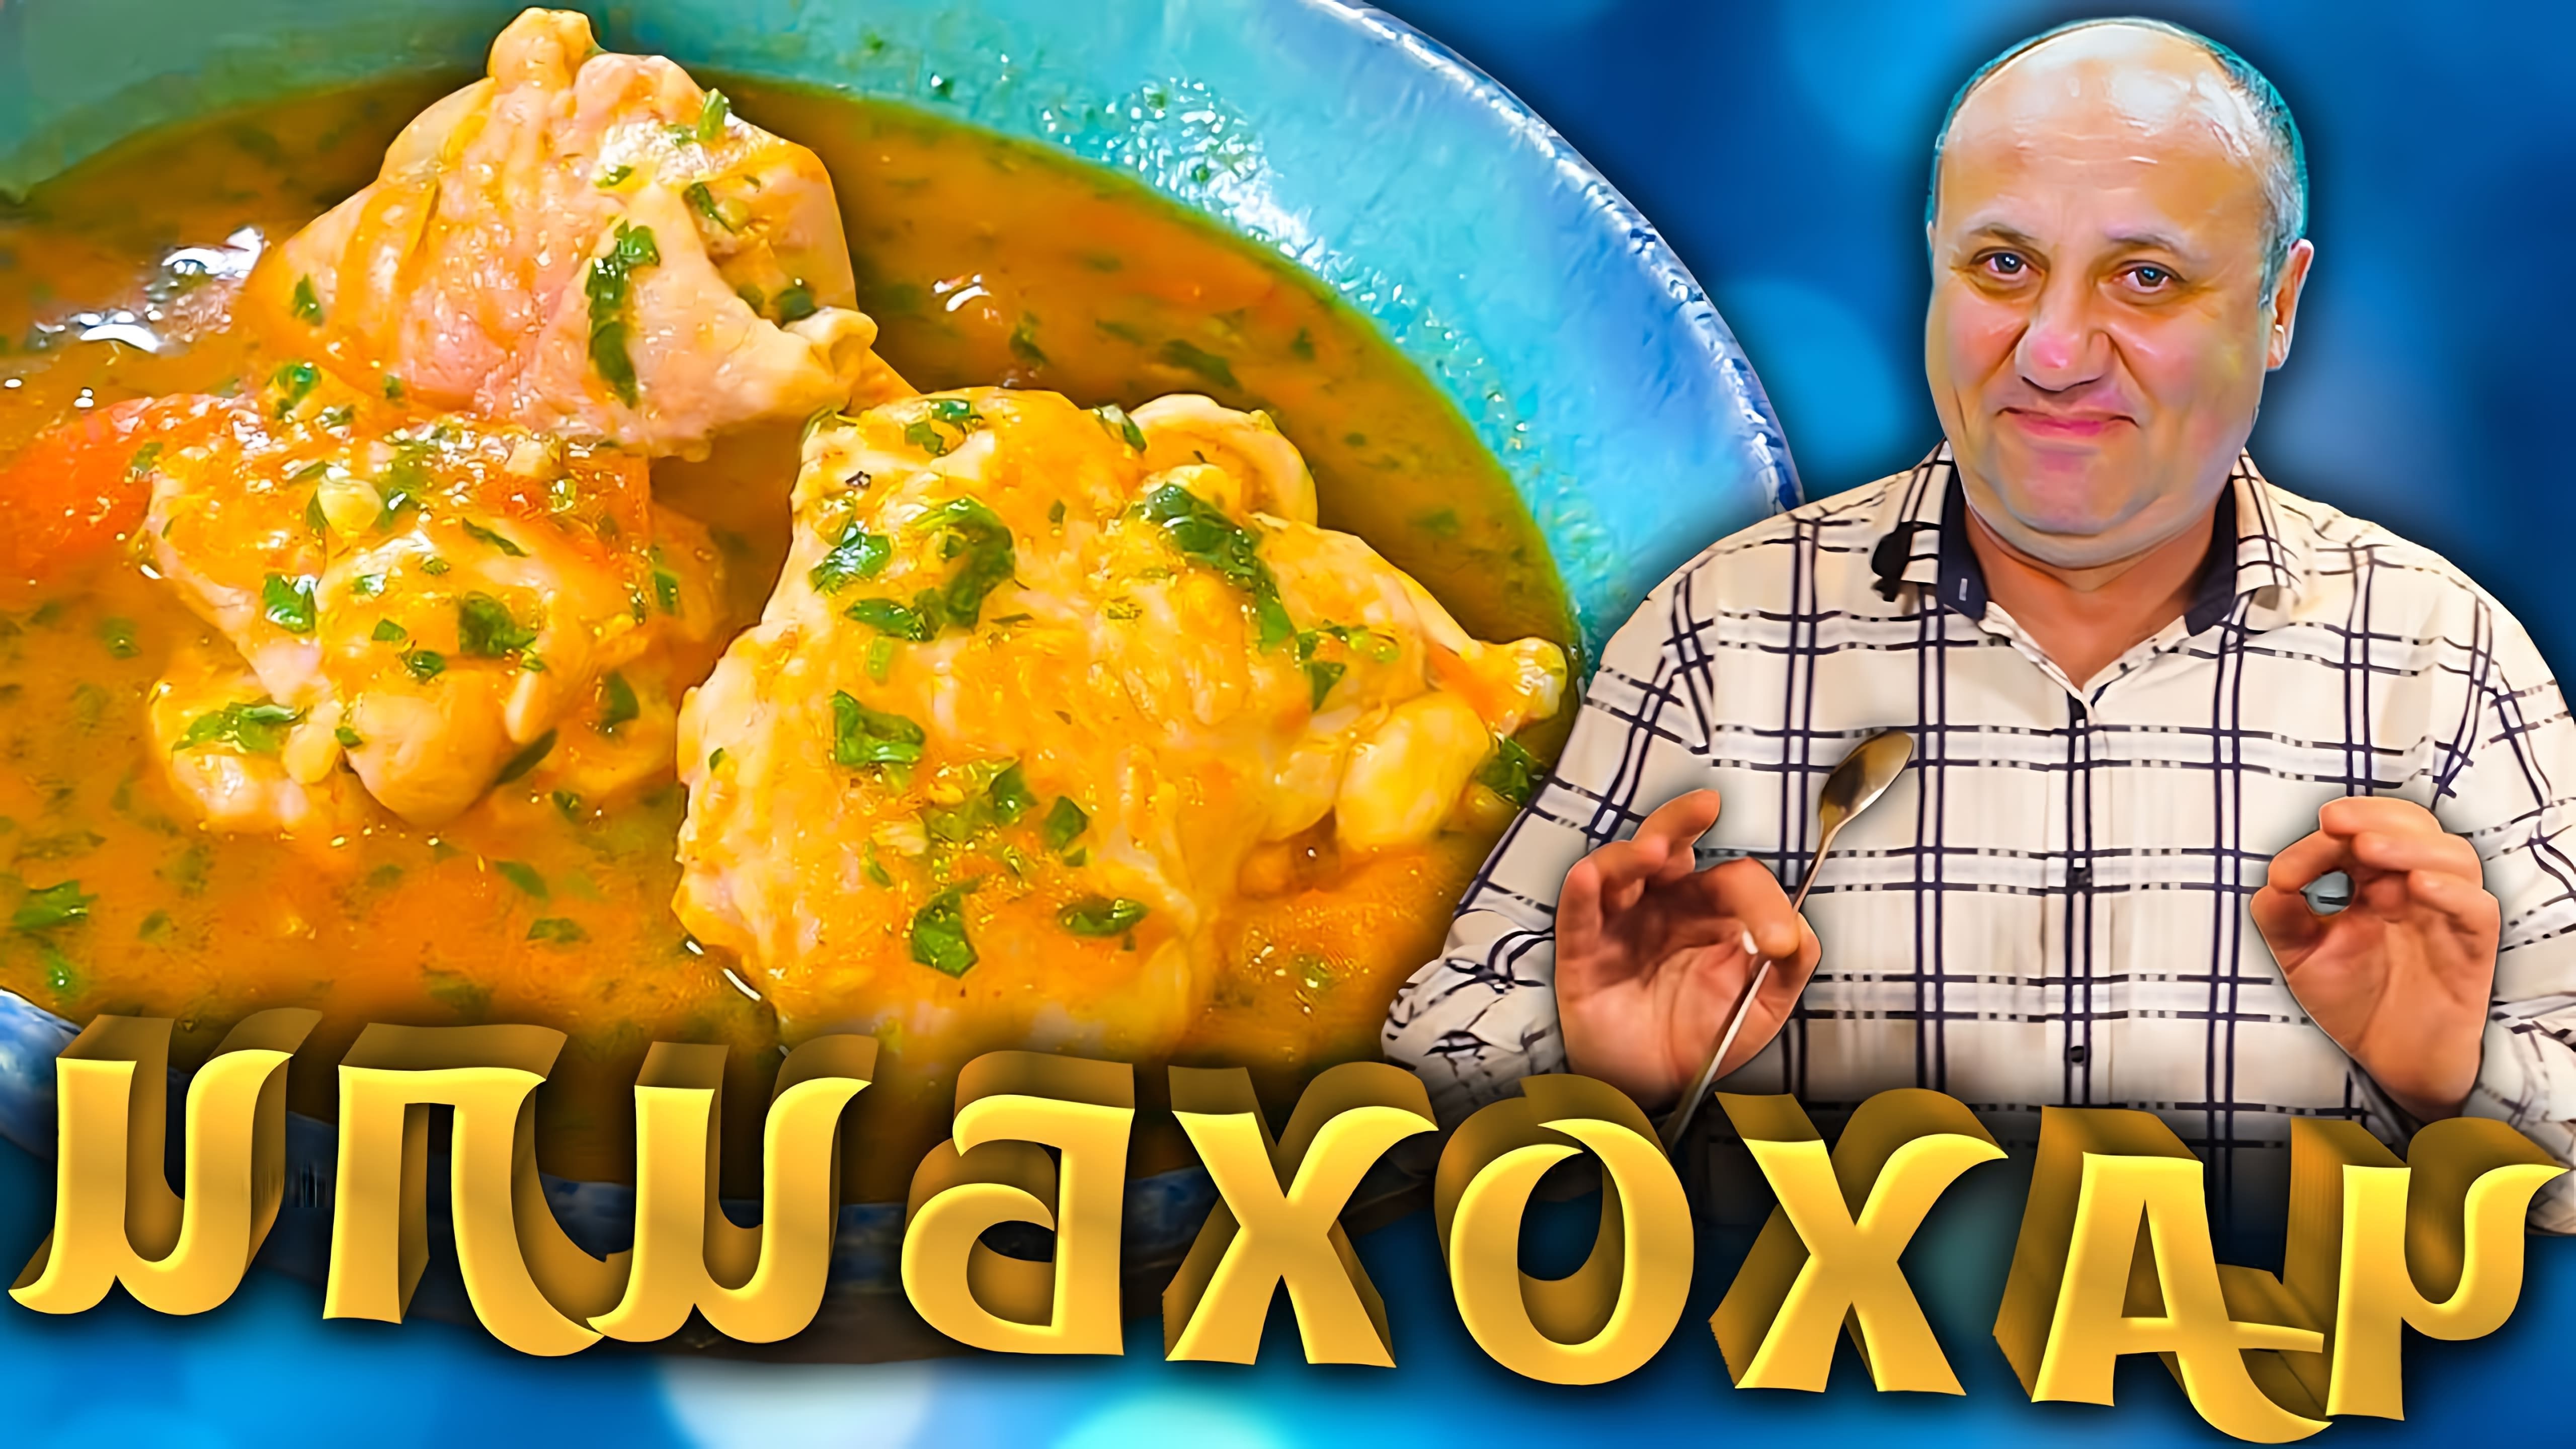 В этом видео шеф-повар Лазерсон готовит грузинское блюдо чахохбили из курицы